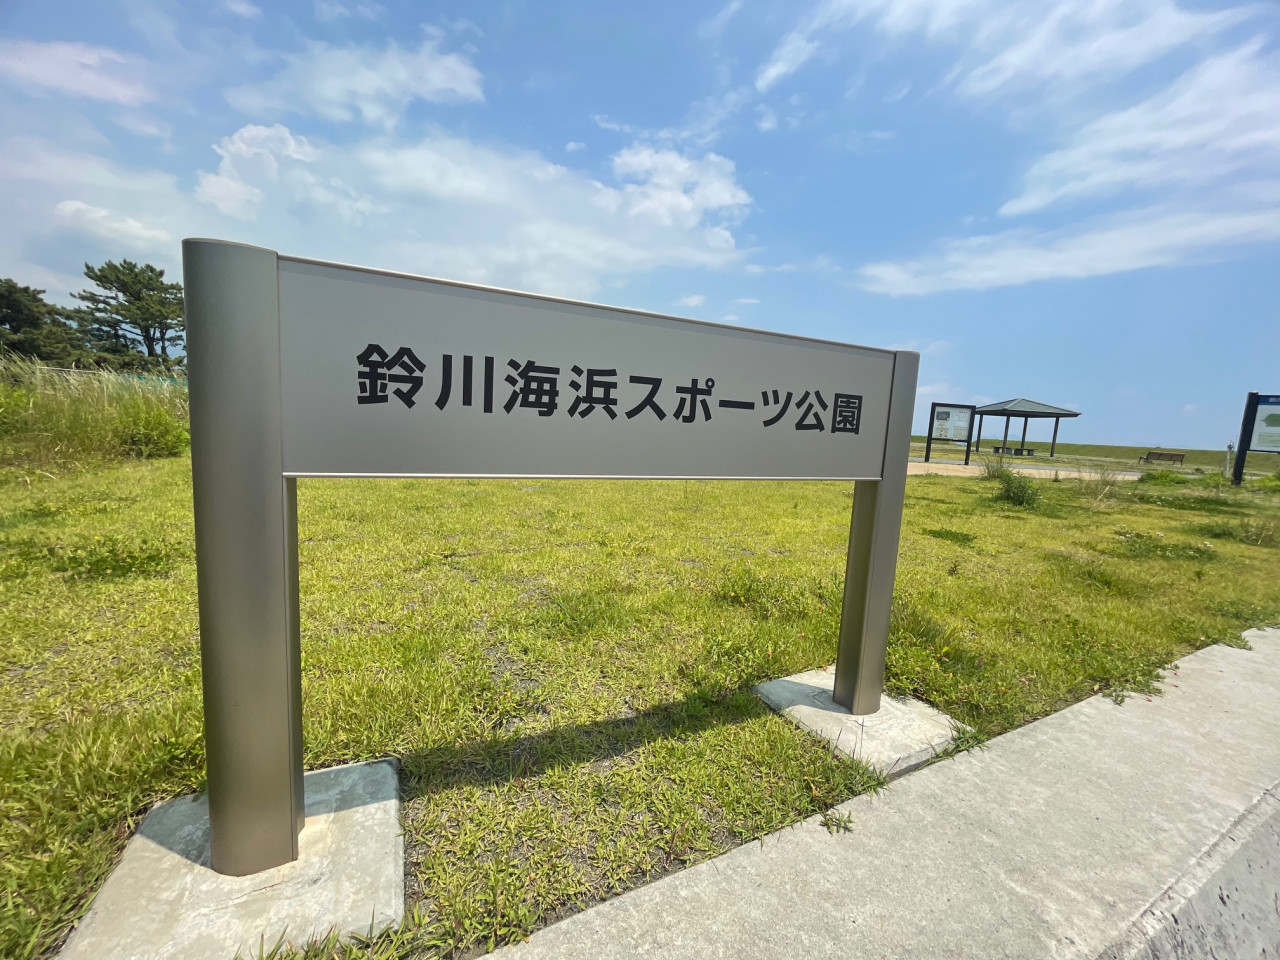 鈴川スポーツ海浜公園 駐車場を利用させて頂きます。